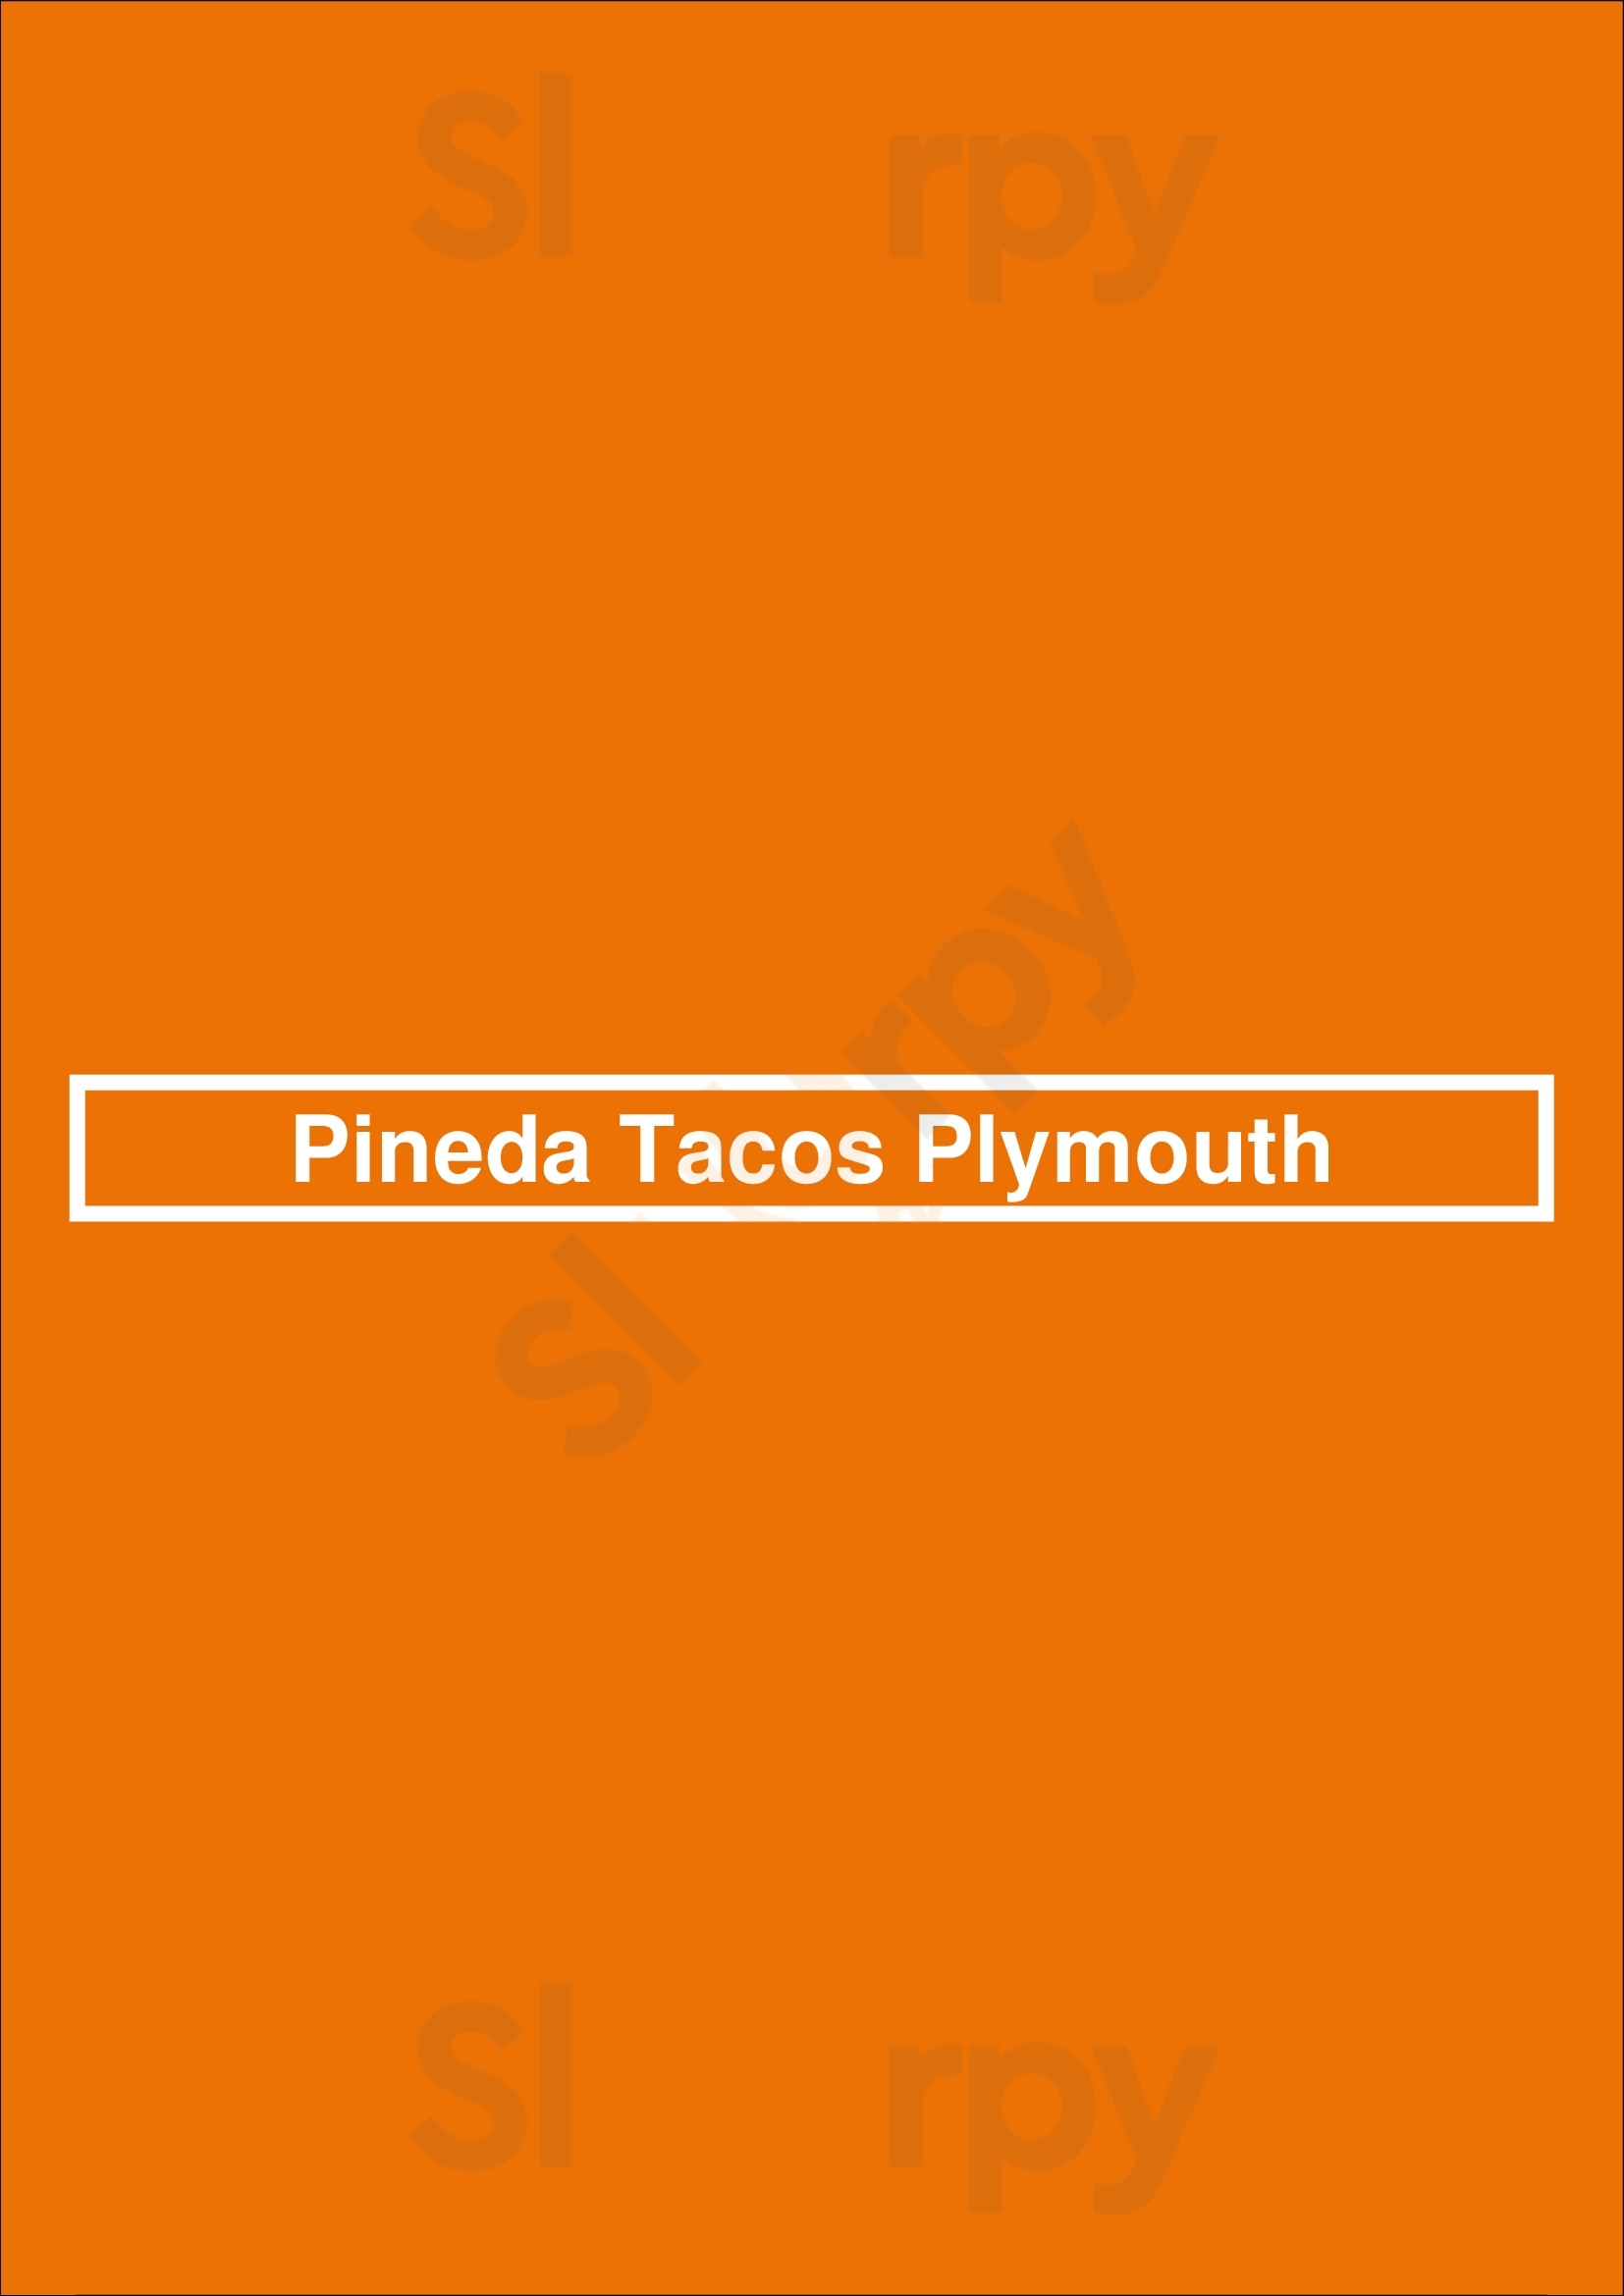 Pineda Tacos Plymouth Minneapolis Menu - 1